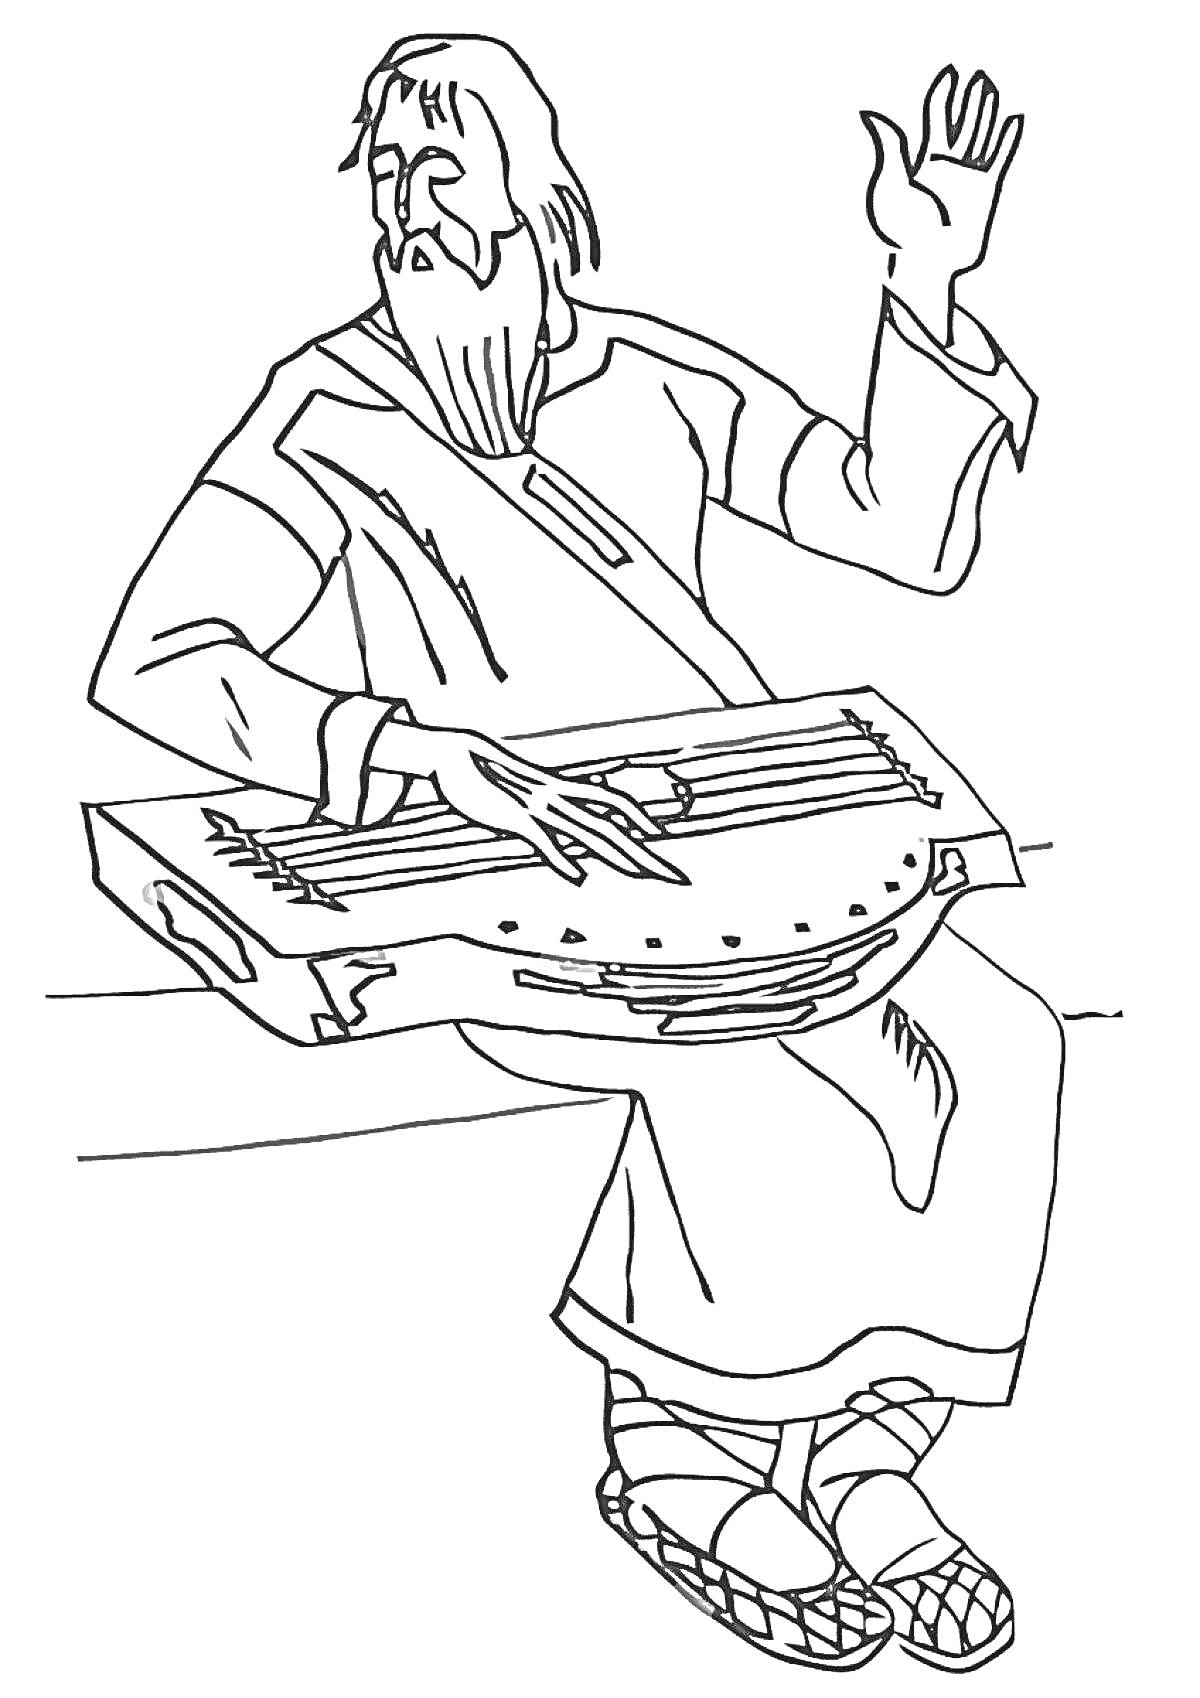 Человек в традиционной одежде играет на гуслях